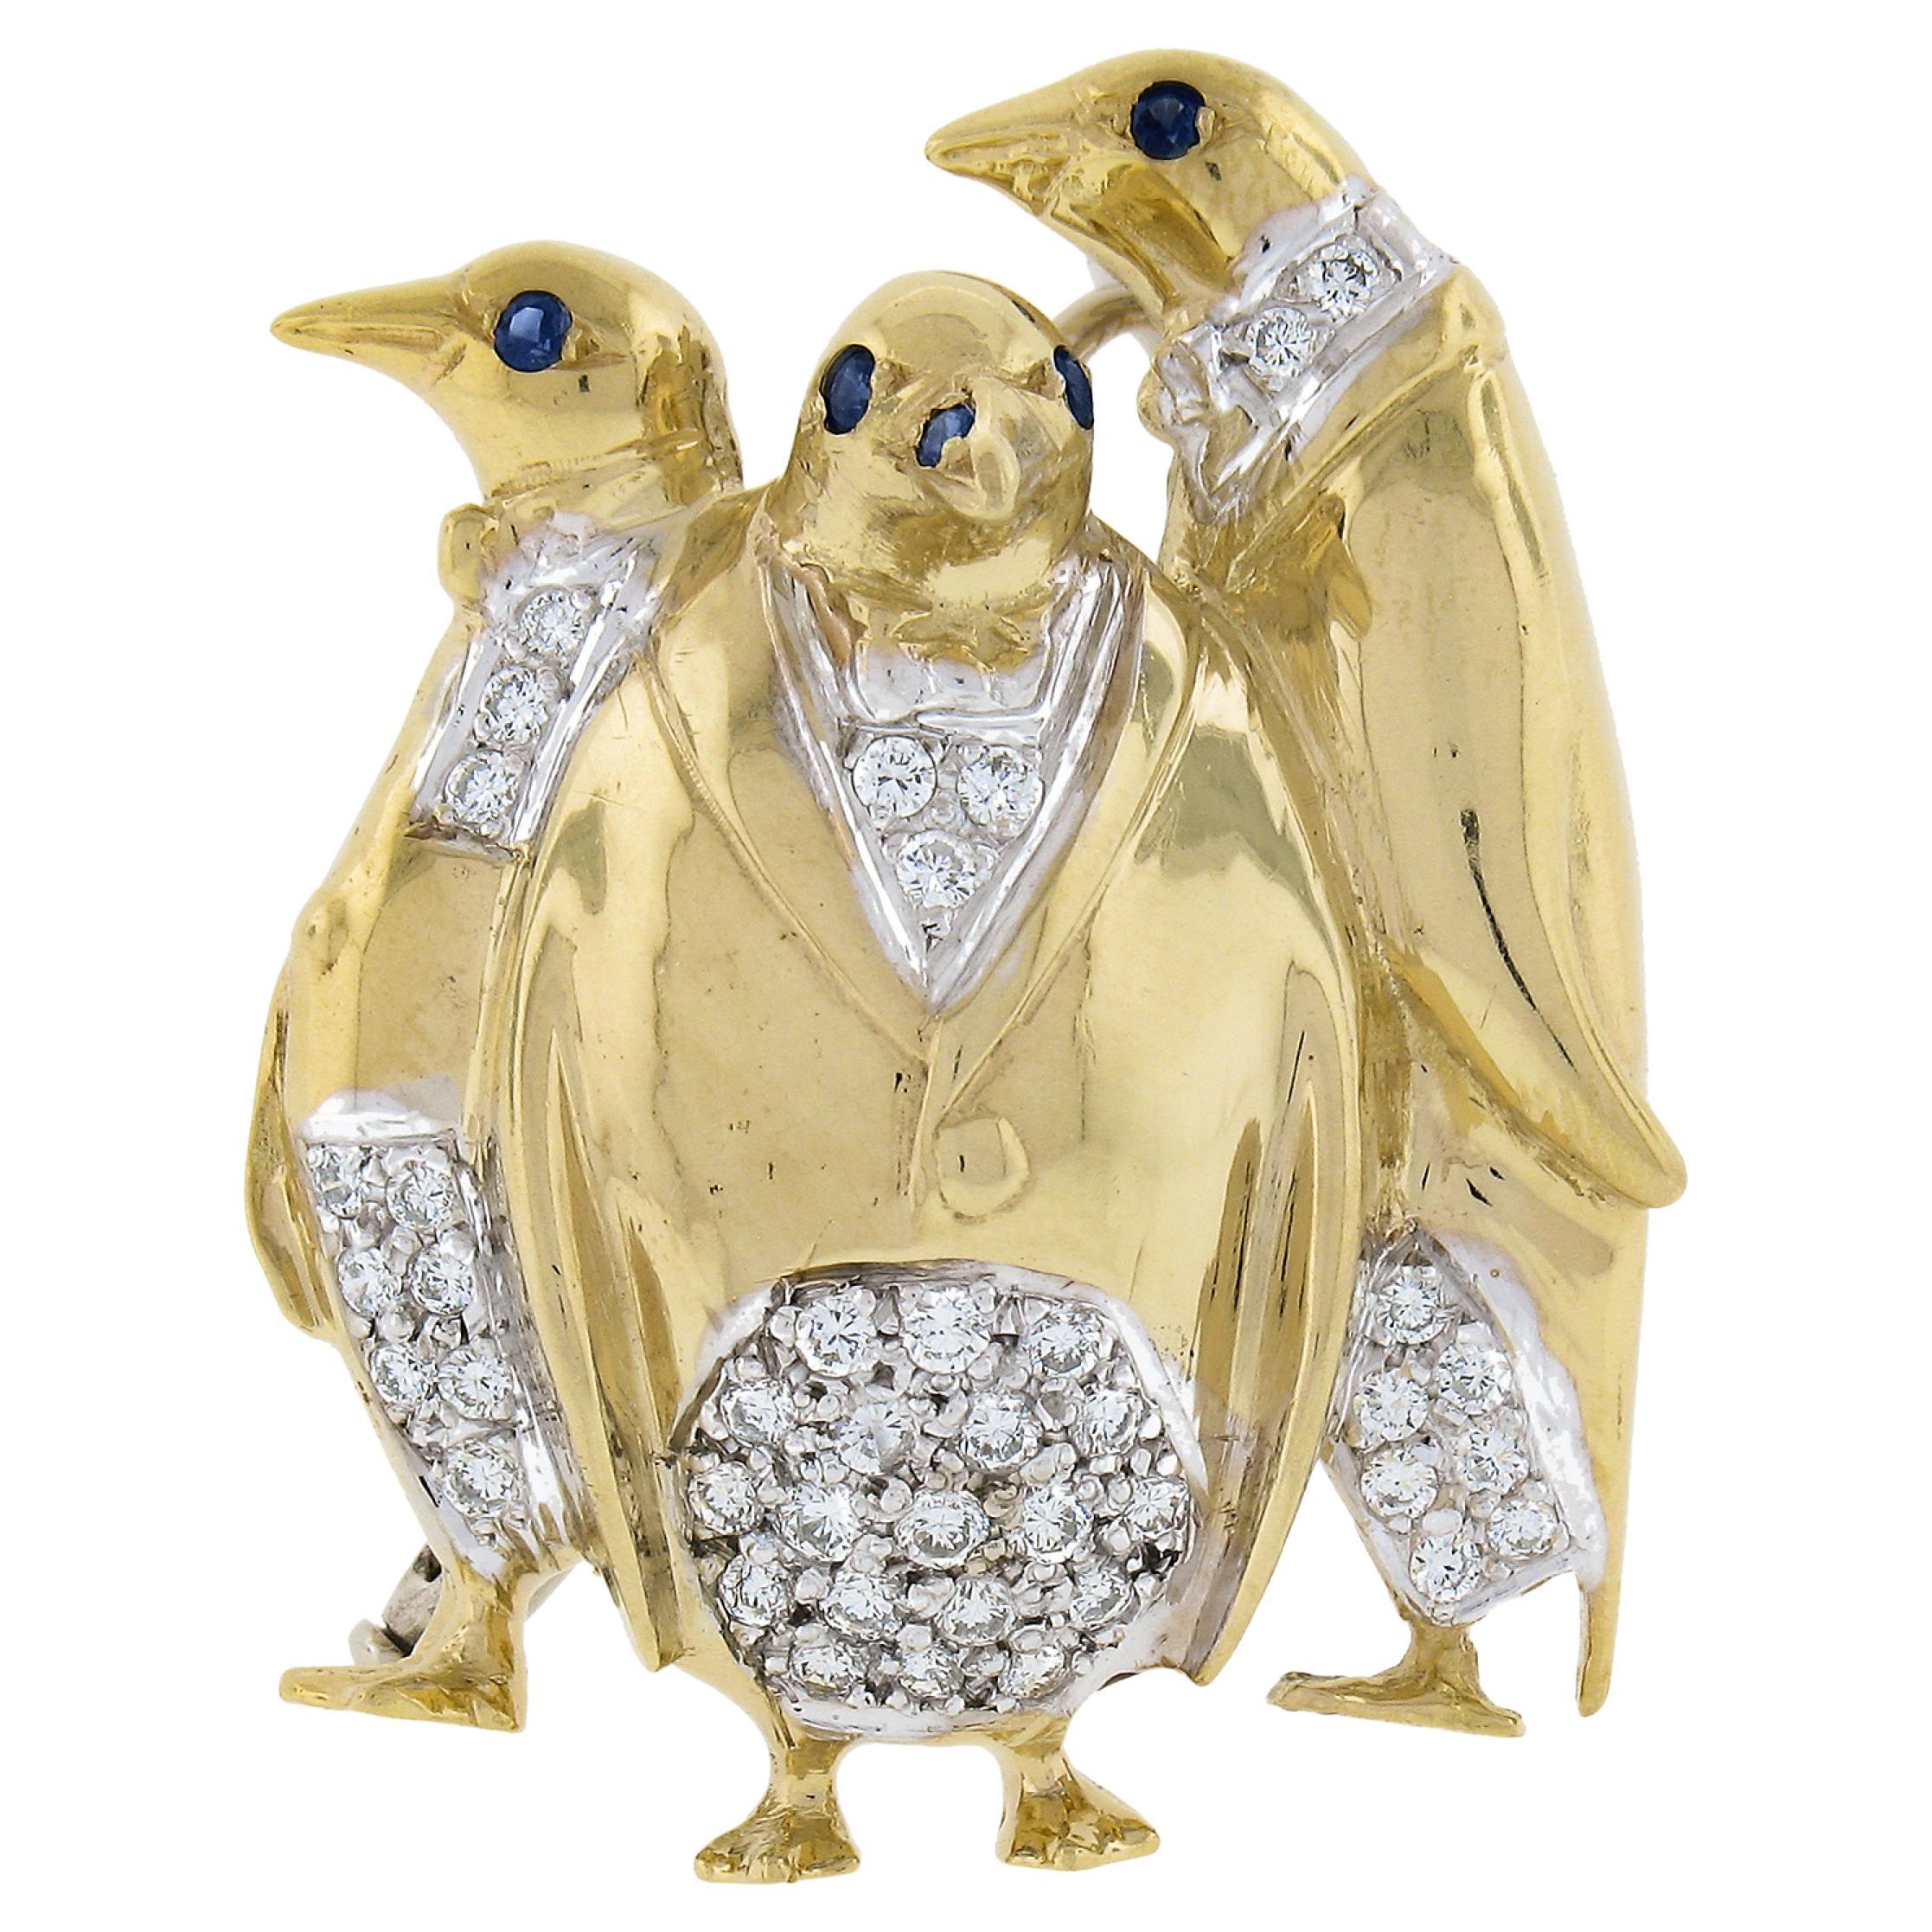 Italian 18K TT Gold Diamond & Sapphire 3 Whimsical Penguin in Tuxedo Pin Brooch